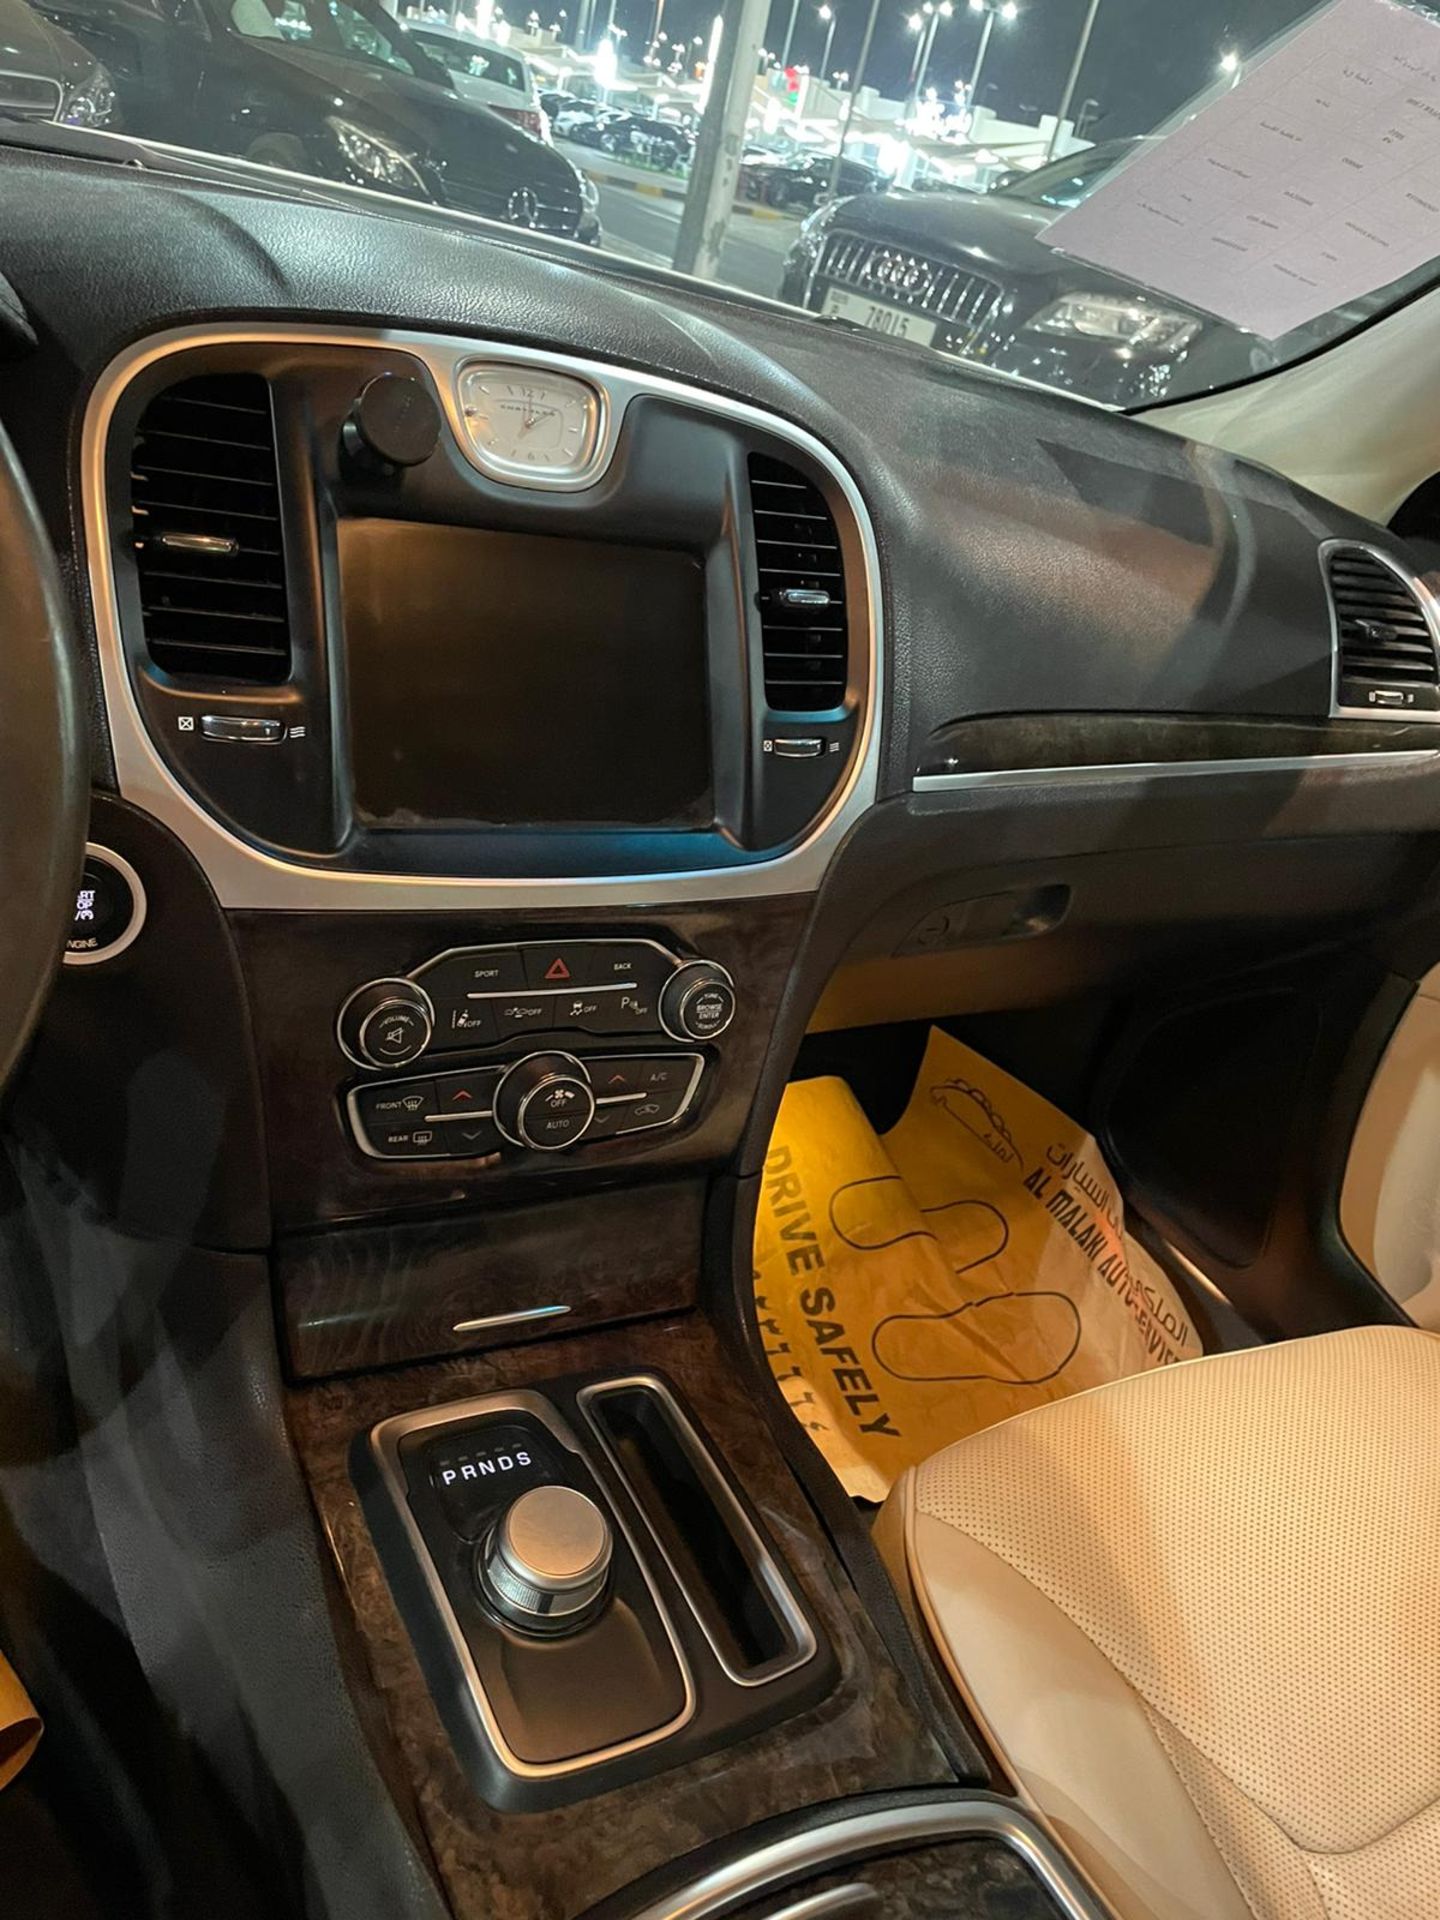 2015 Chrysler 300 Hemi 44,000km - sold with nova in uk mid feb *PLUS VAT* - Image 3 of 13